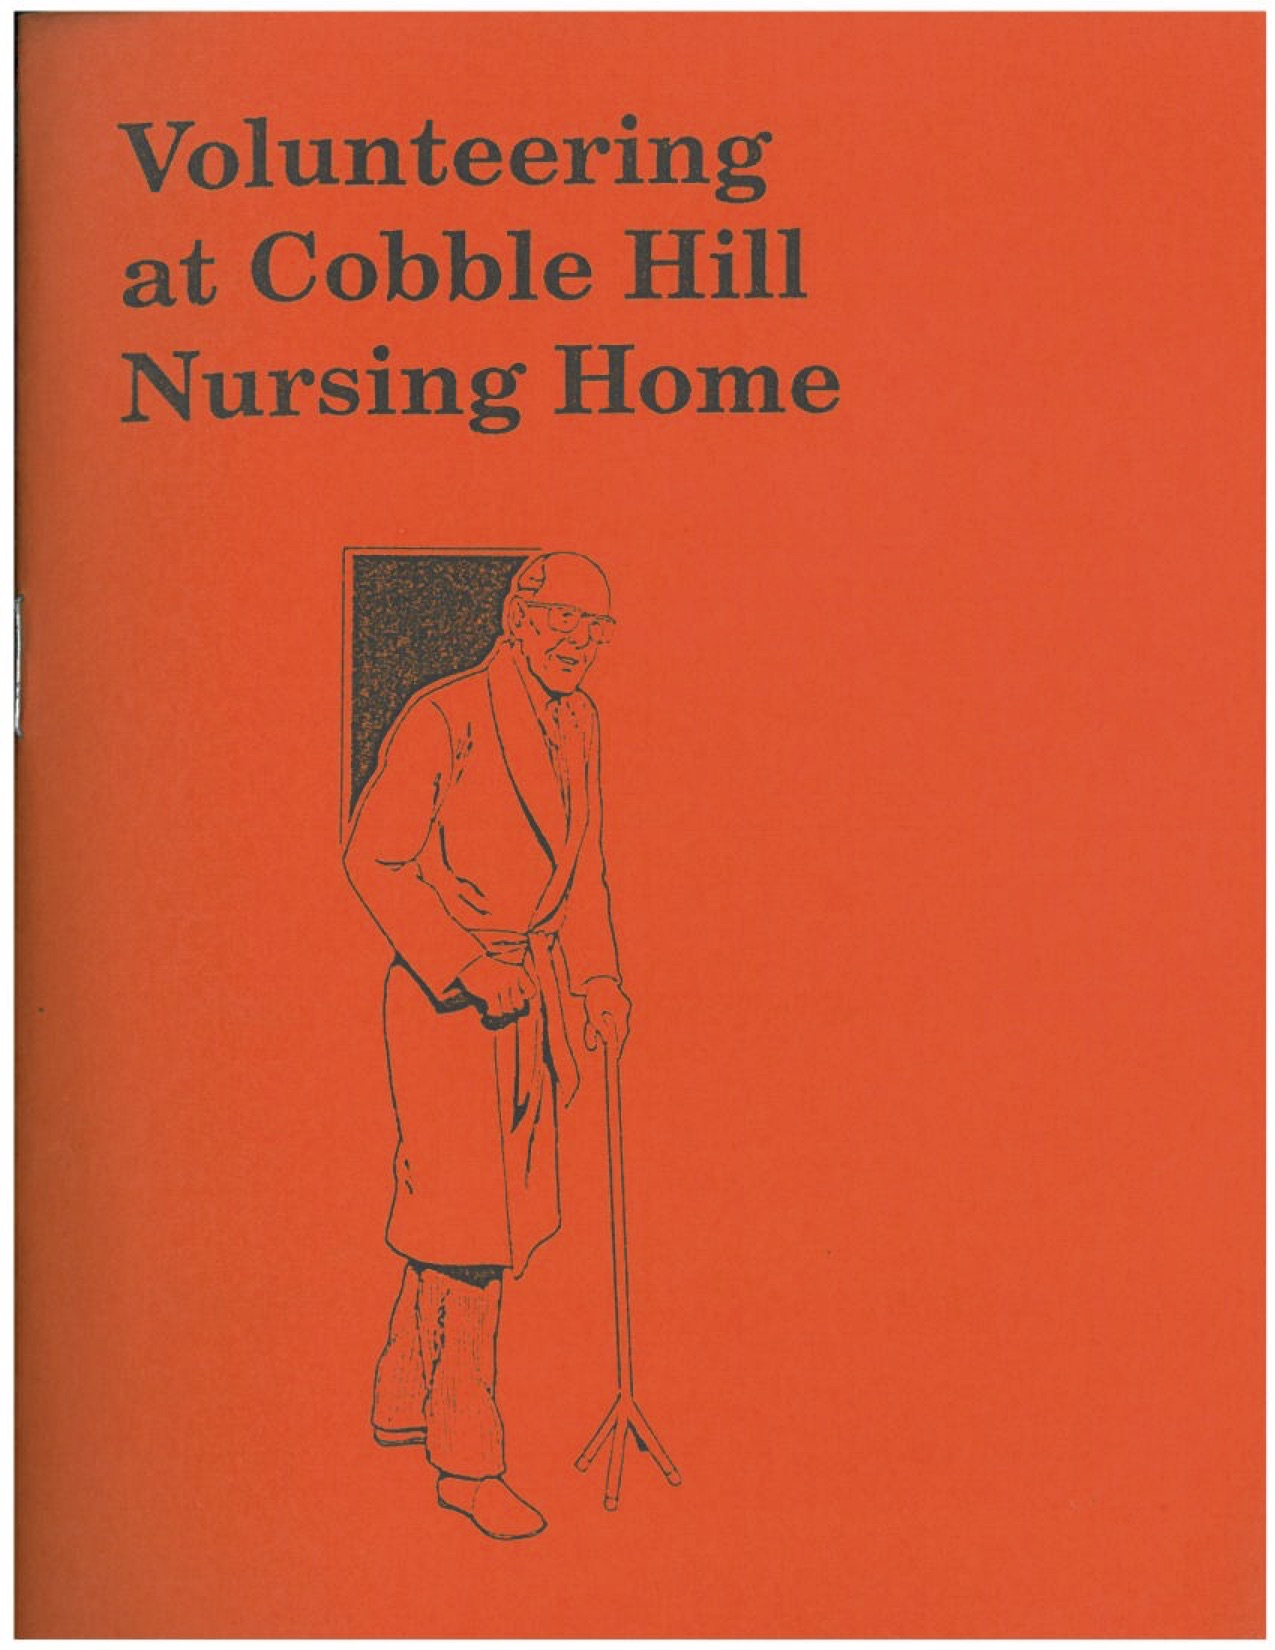 Volunteering at Cobble Hill Nursing Home